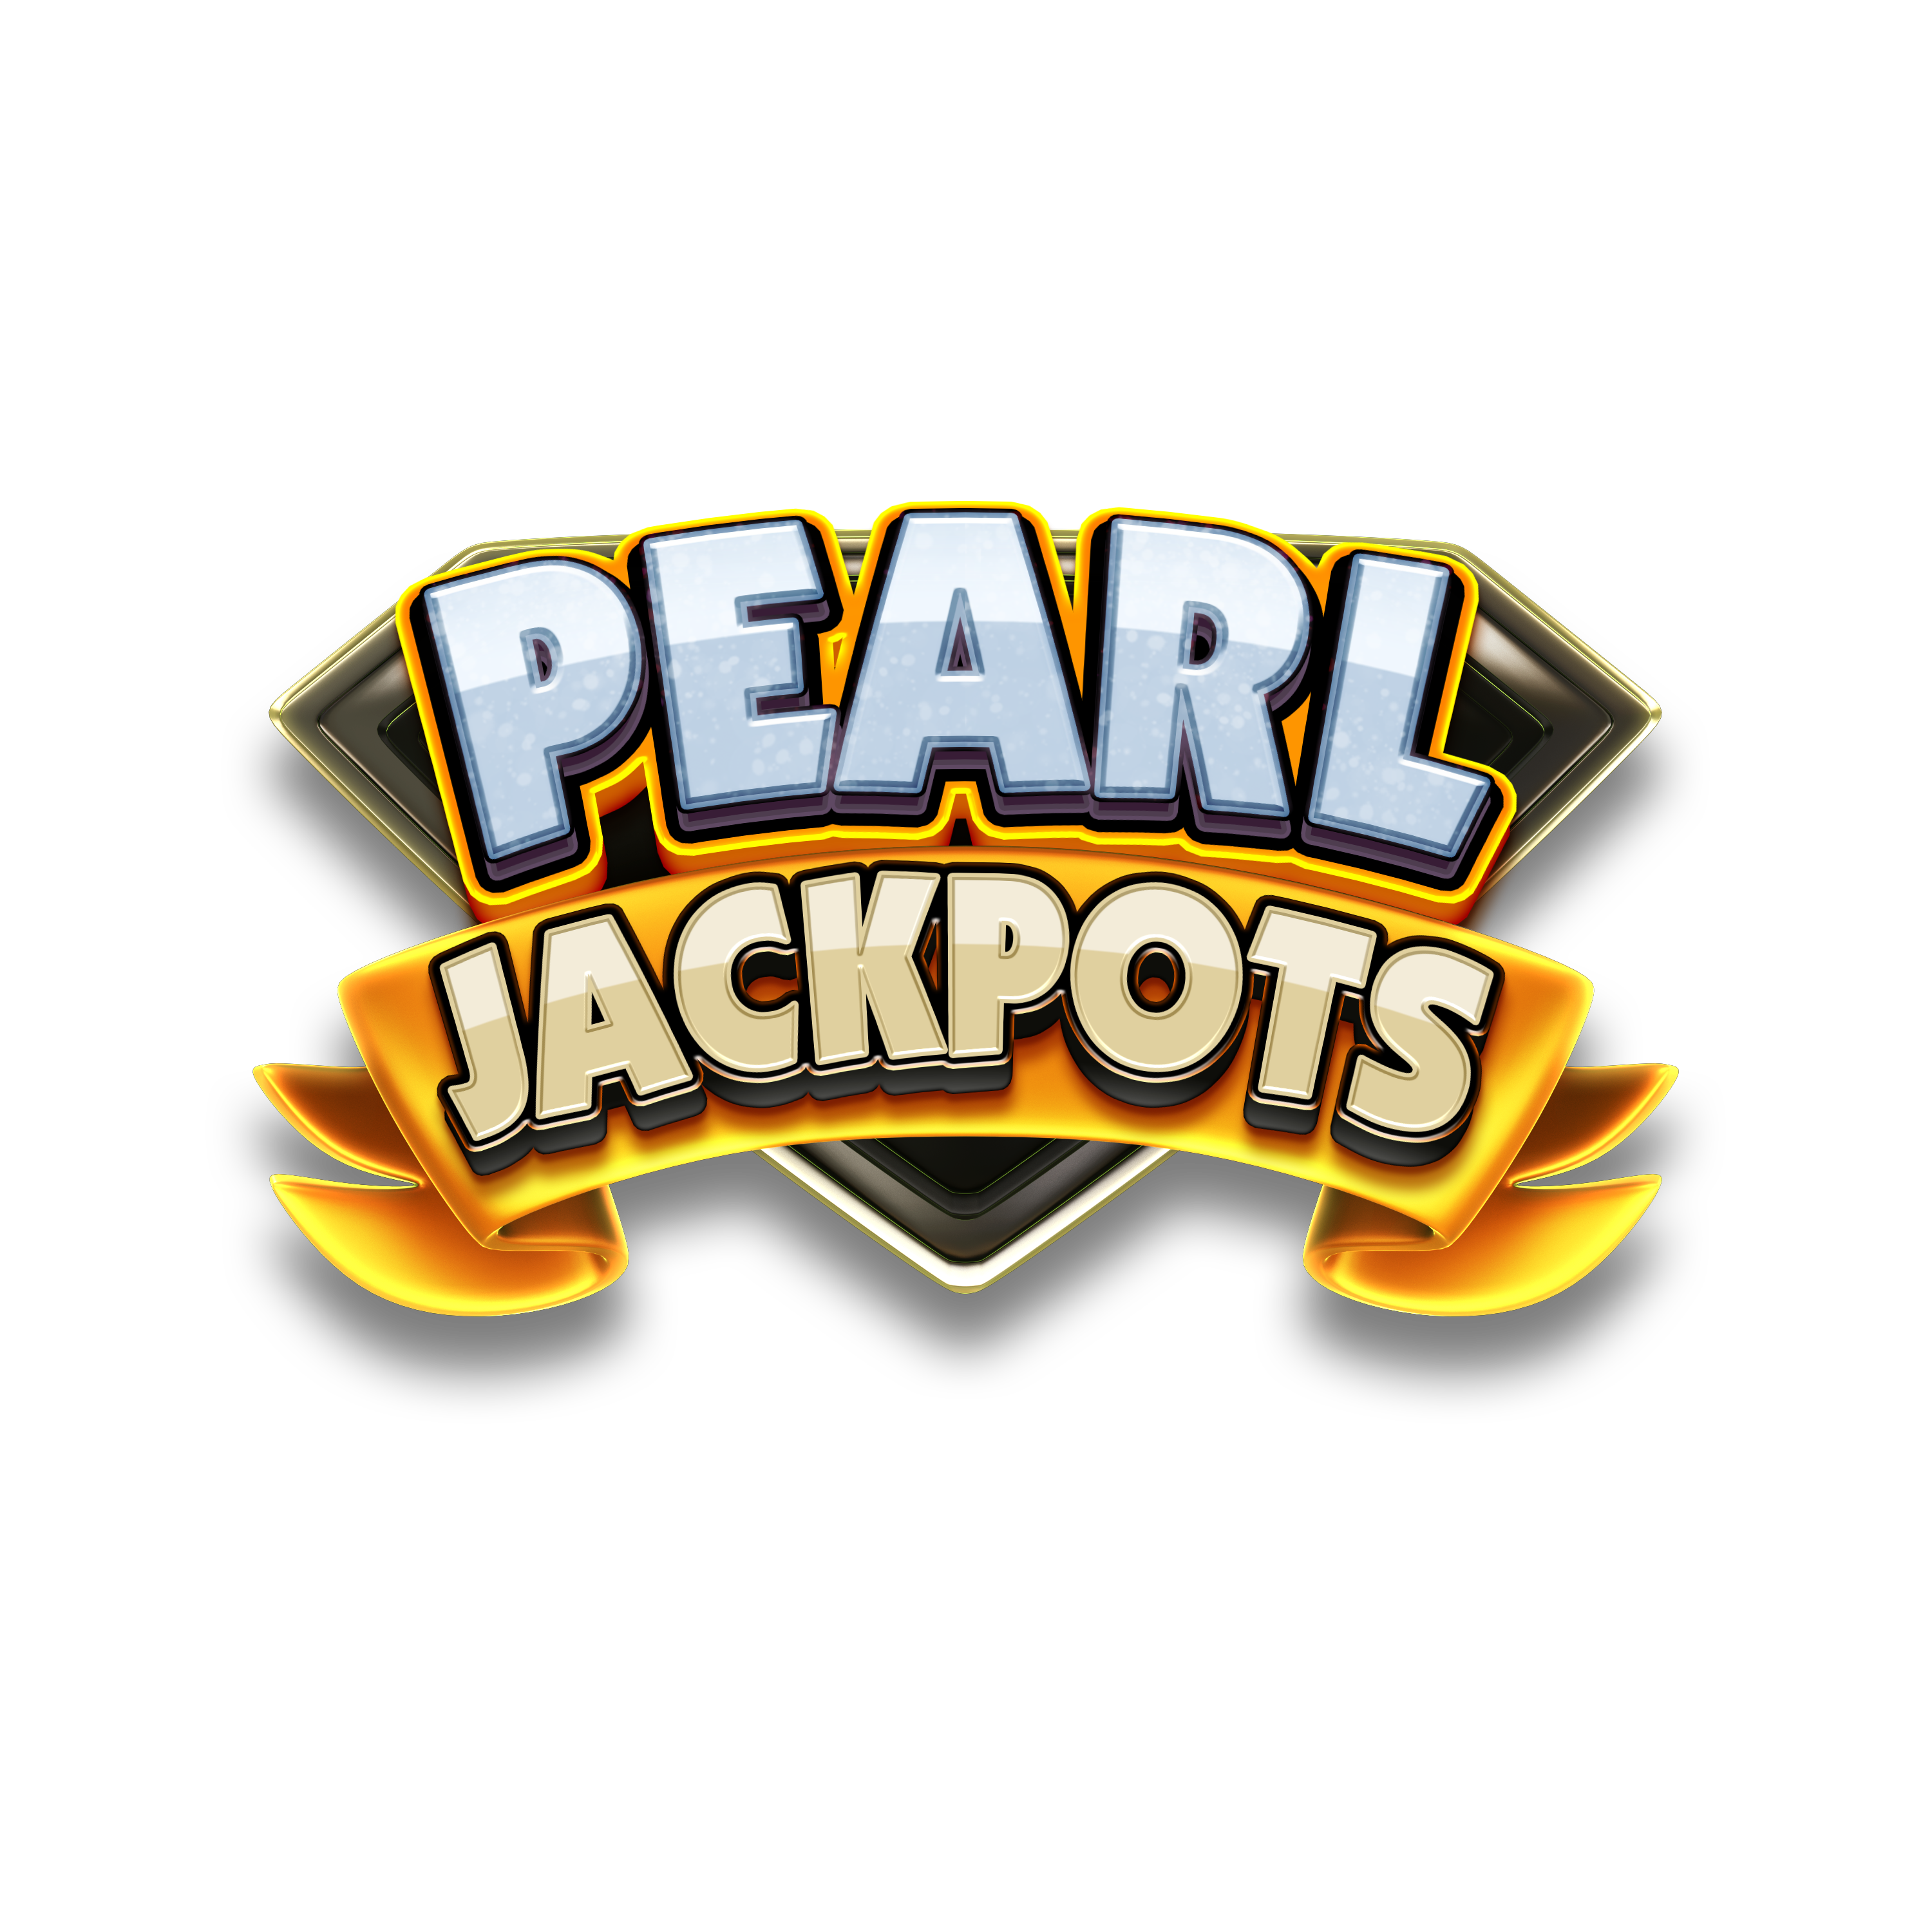 Pearl jackpot